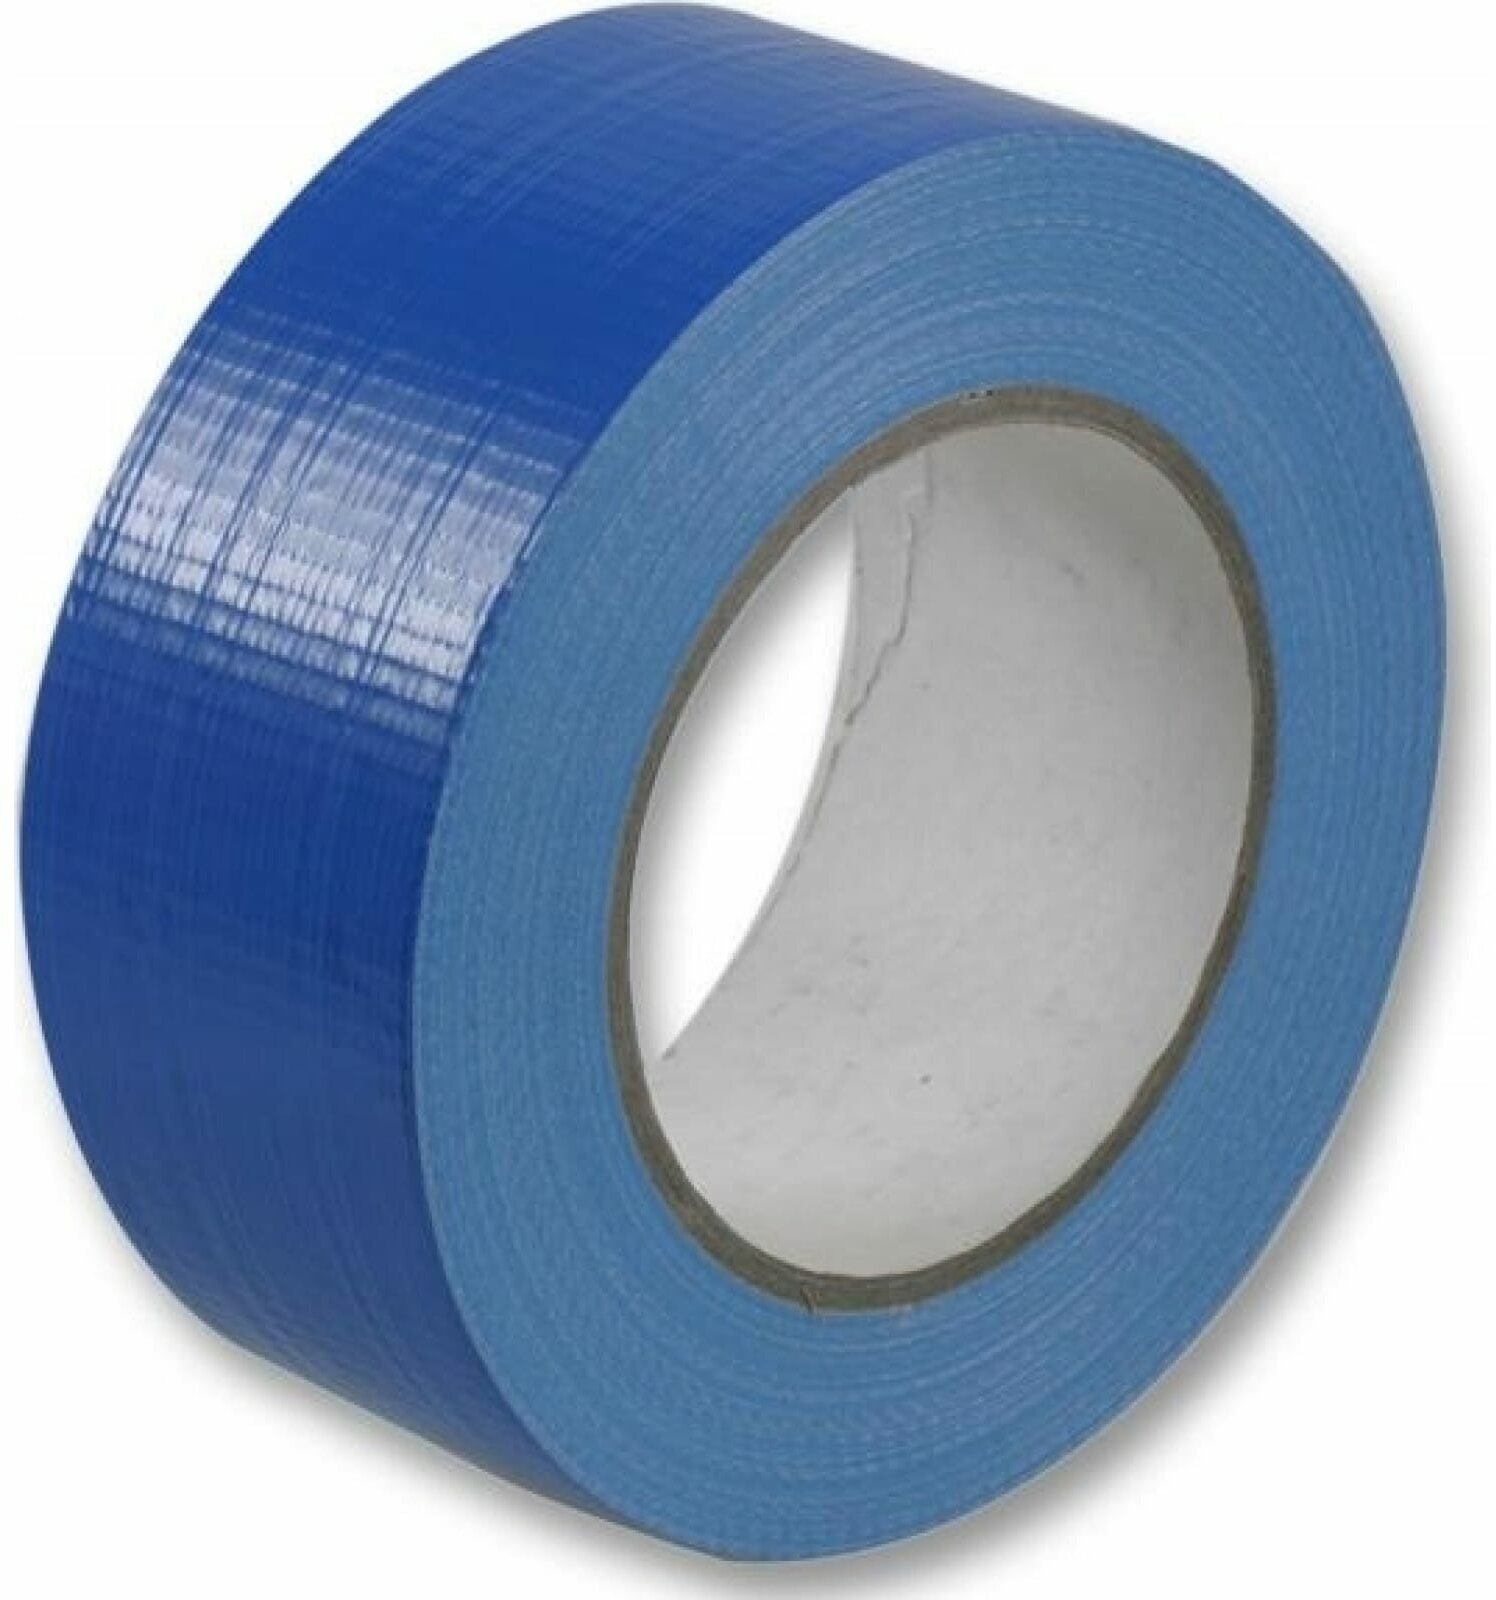 Лента клейкая армированная влагостойкая на тканевой основе синяя 243412 управдом (Артикул: 4100002070; Размер 50х50 мм/м)